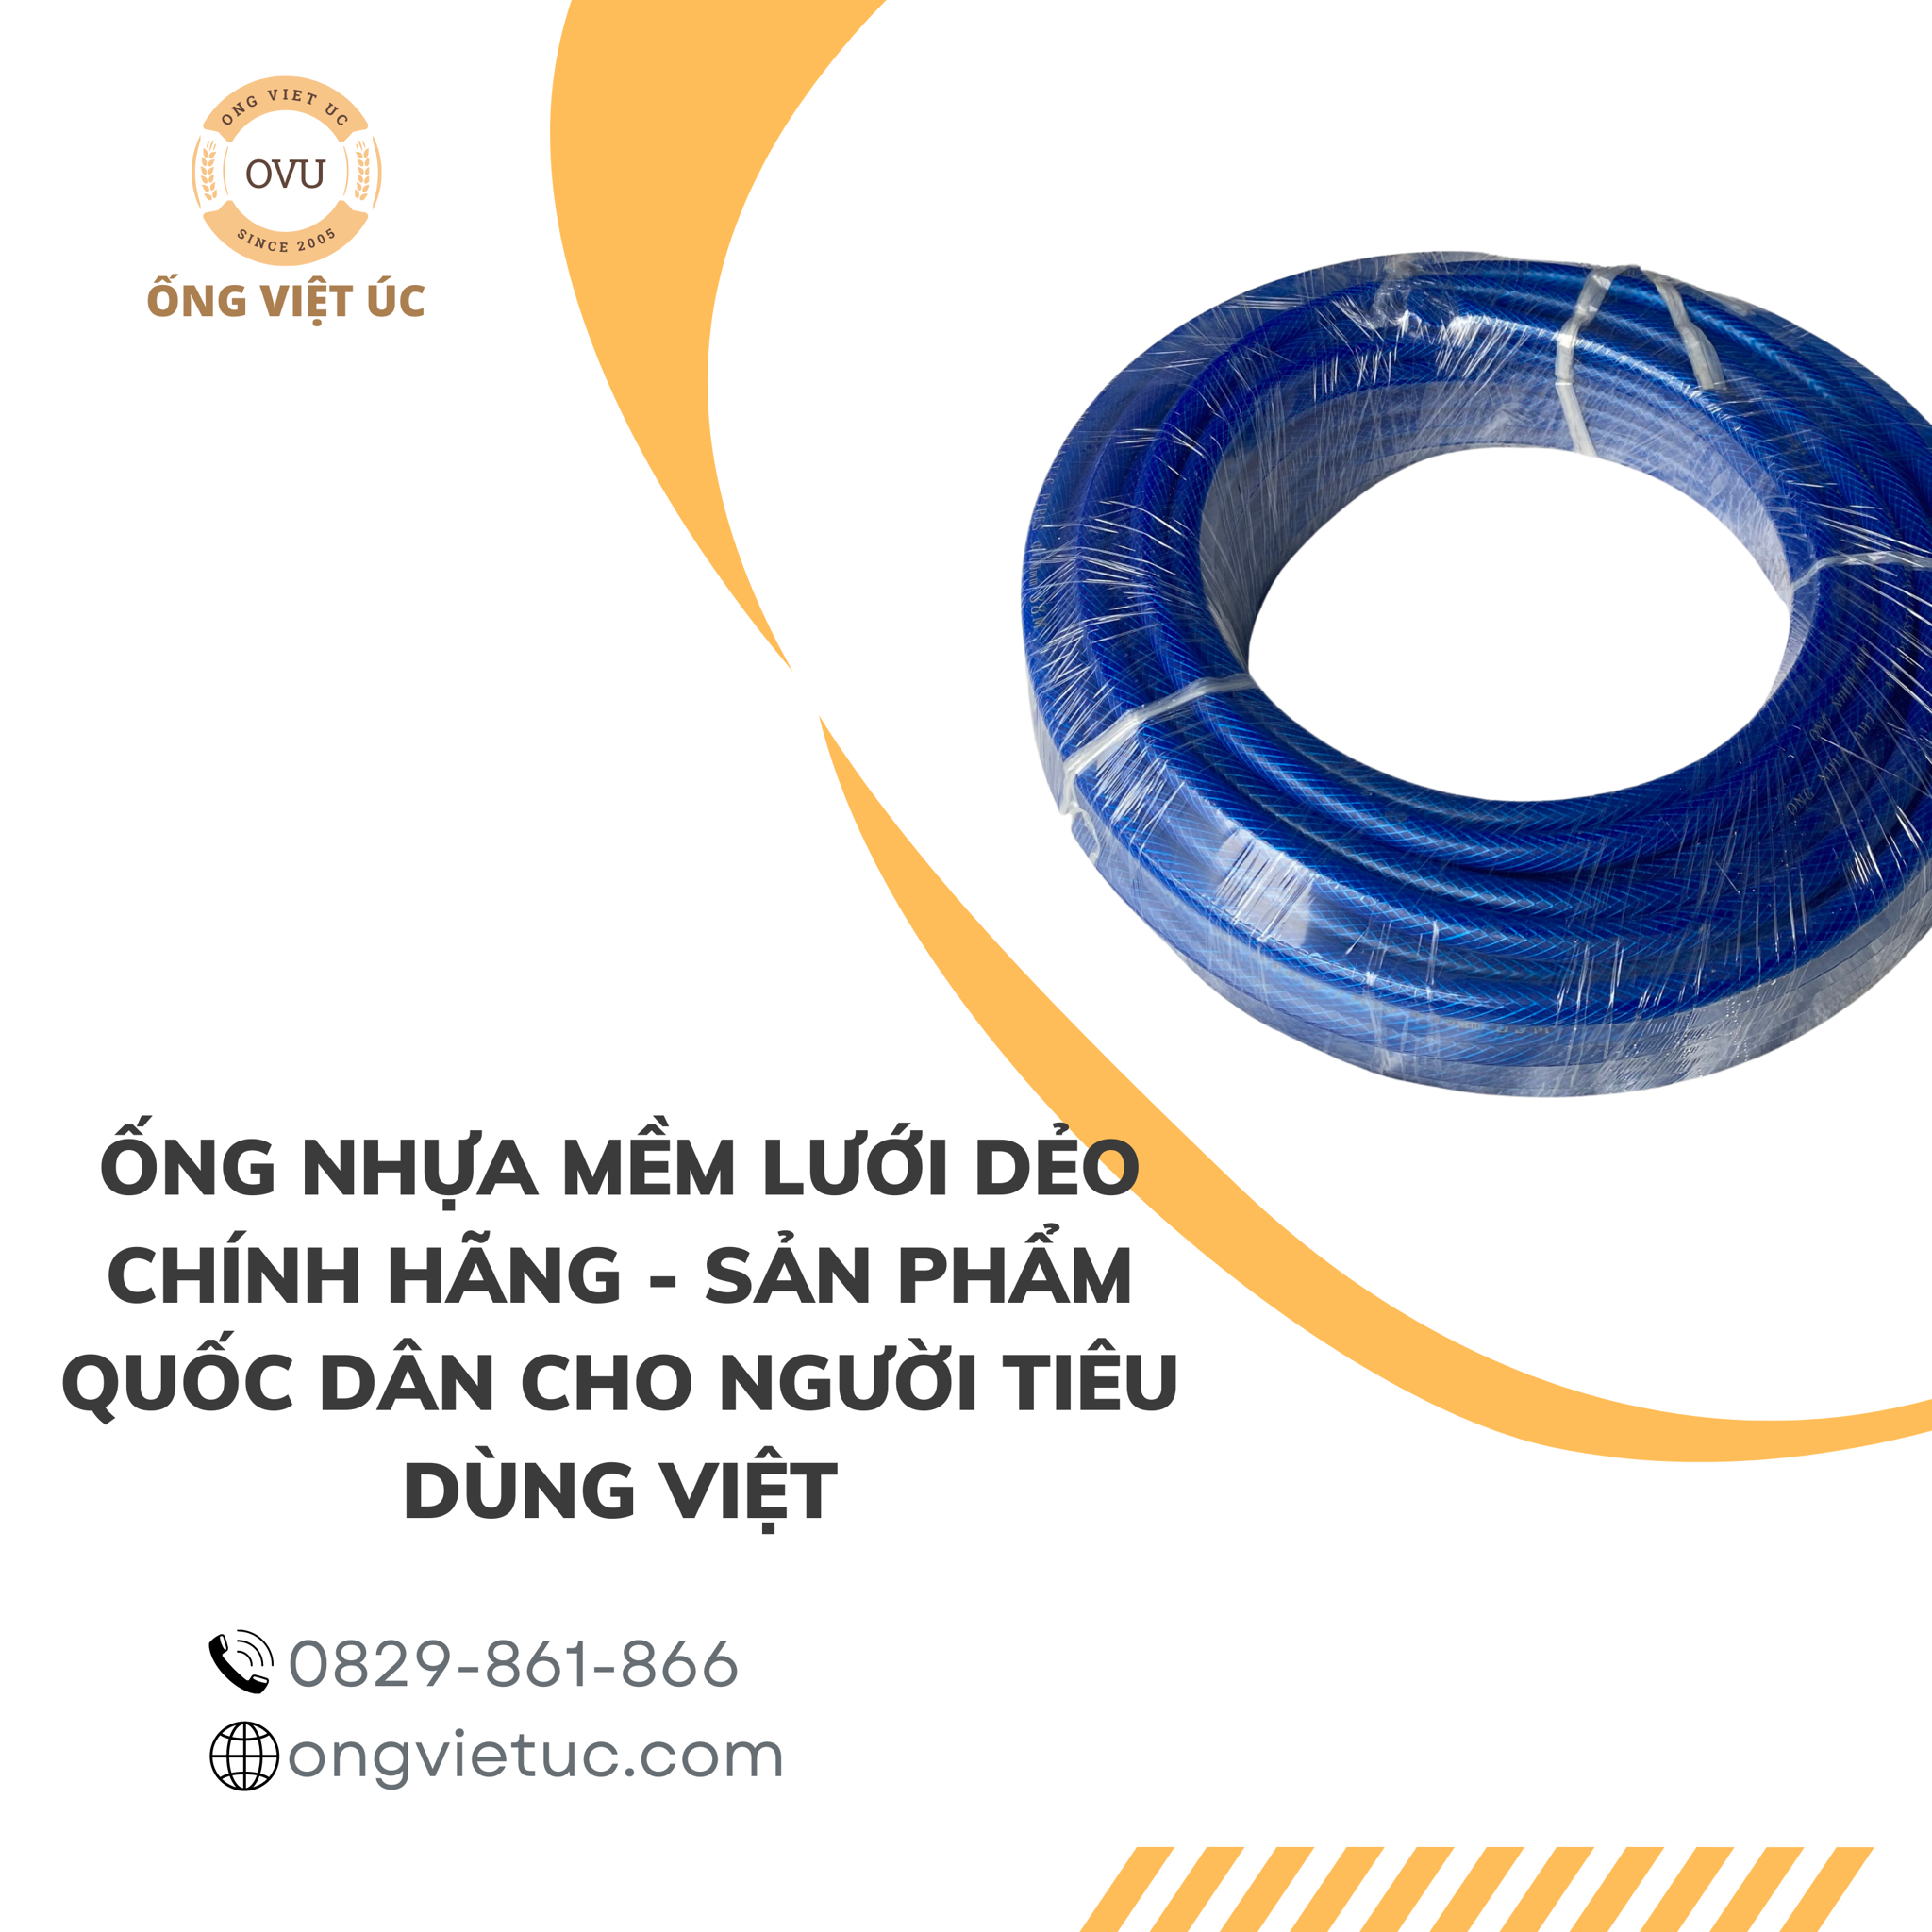 Ống nhựa mềm lưới dẻo chính hãng - Sản phẩm quốc dân cho người tiêu dùng Việt